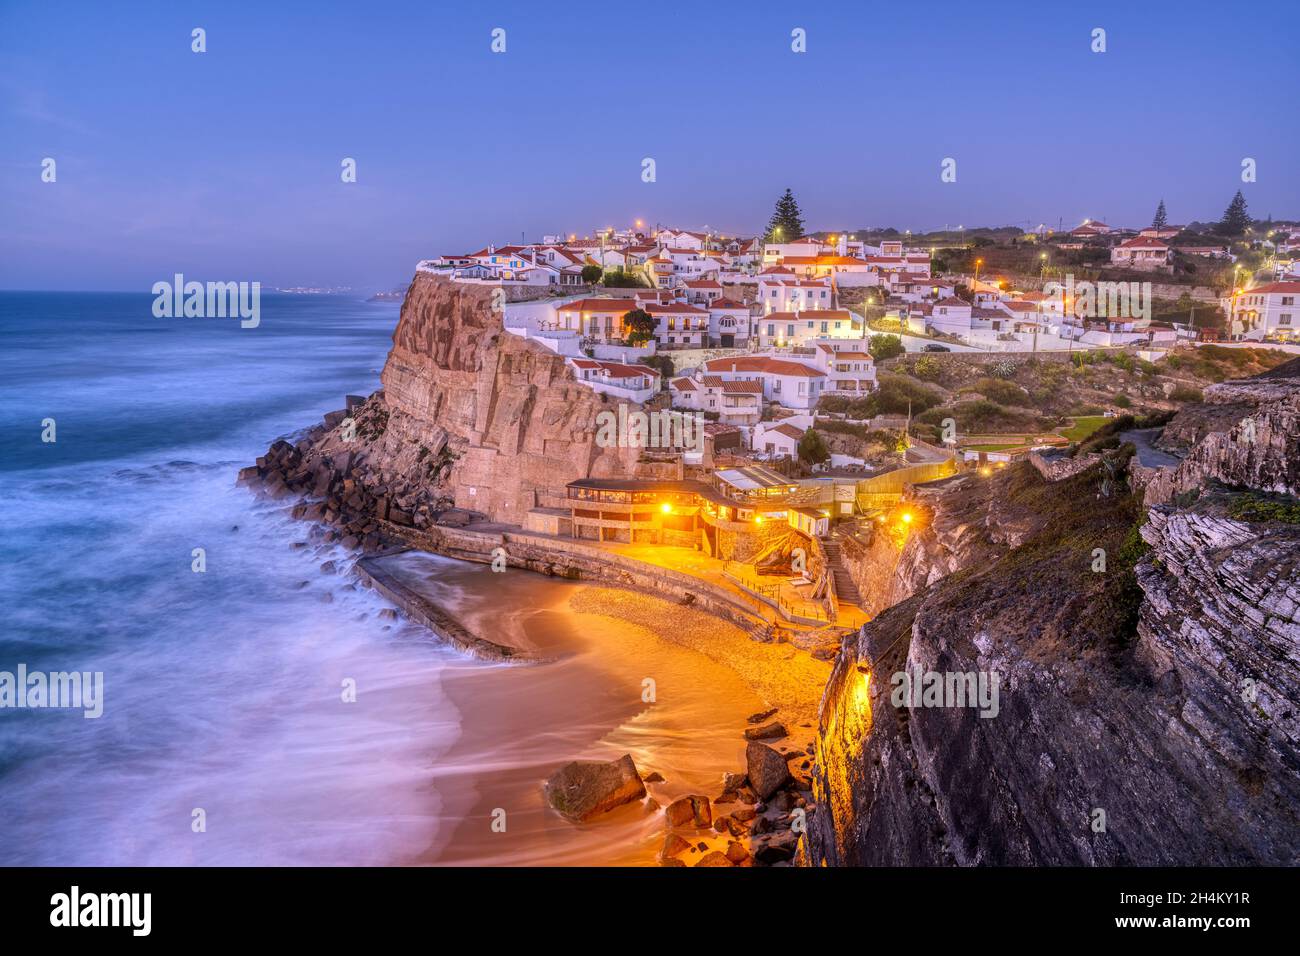 Le beau village d'Azenhas do Mar sur la côte atlantique portugaise après le coucher du soleil Banque D'Images